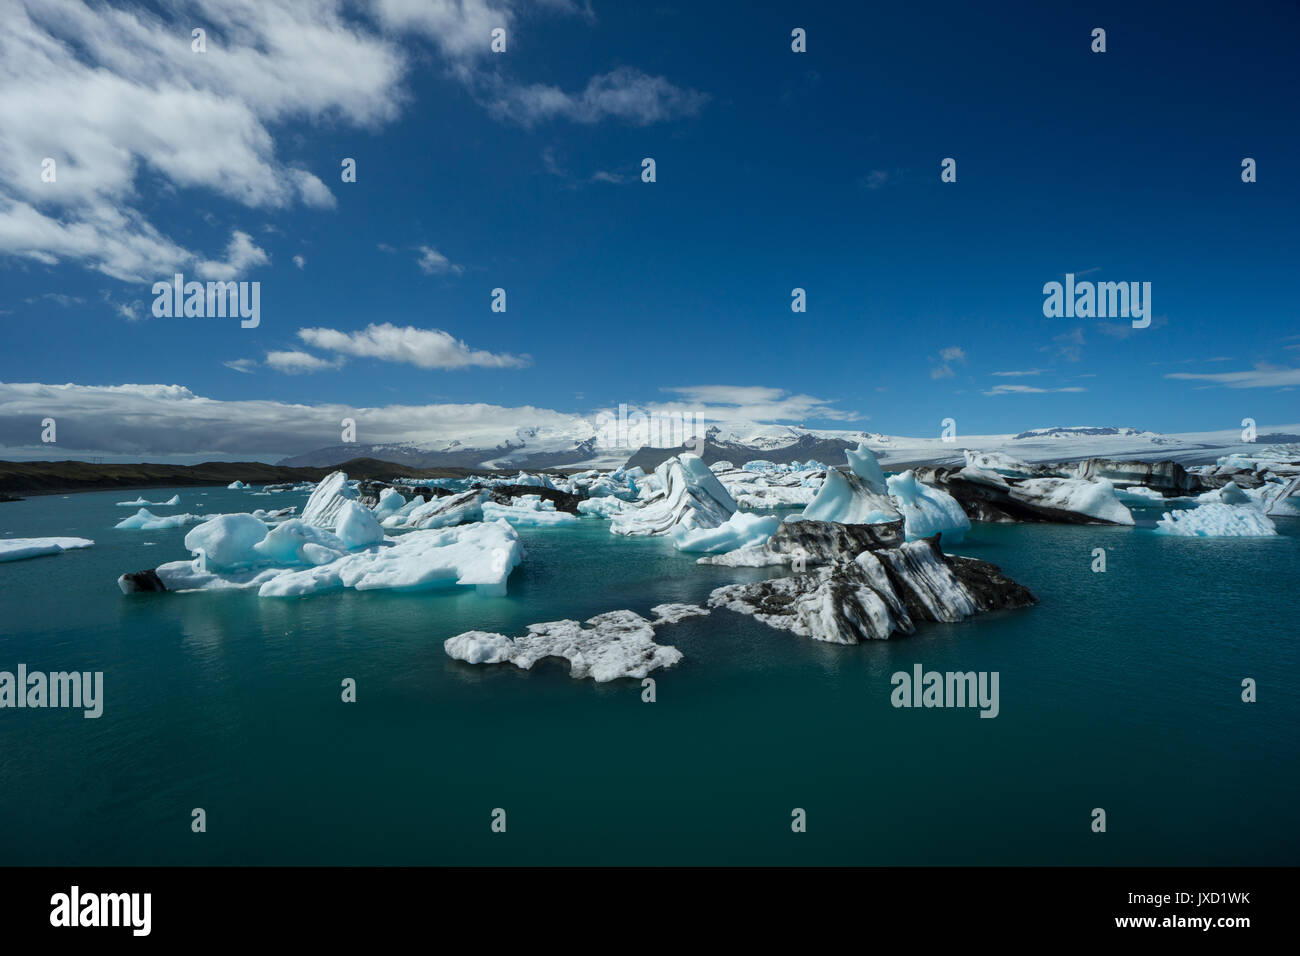 Islande - Photographie aérienne d'un grand nombre d'énormes blocs de glace et l'eau bleue Banque D'Images